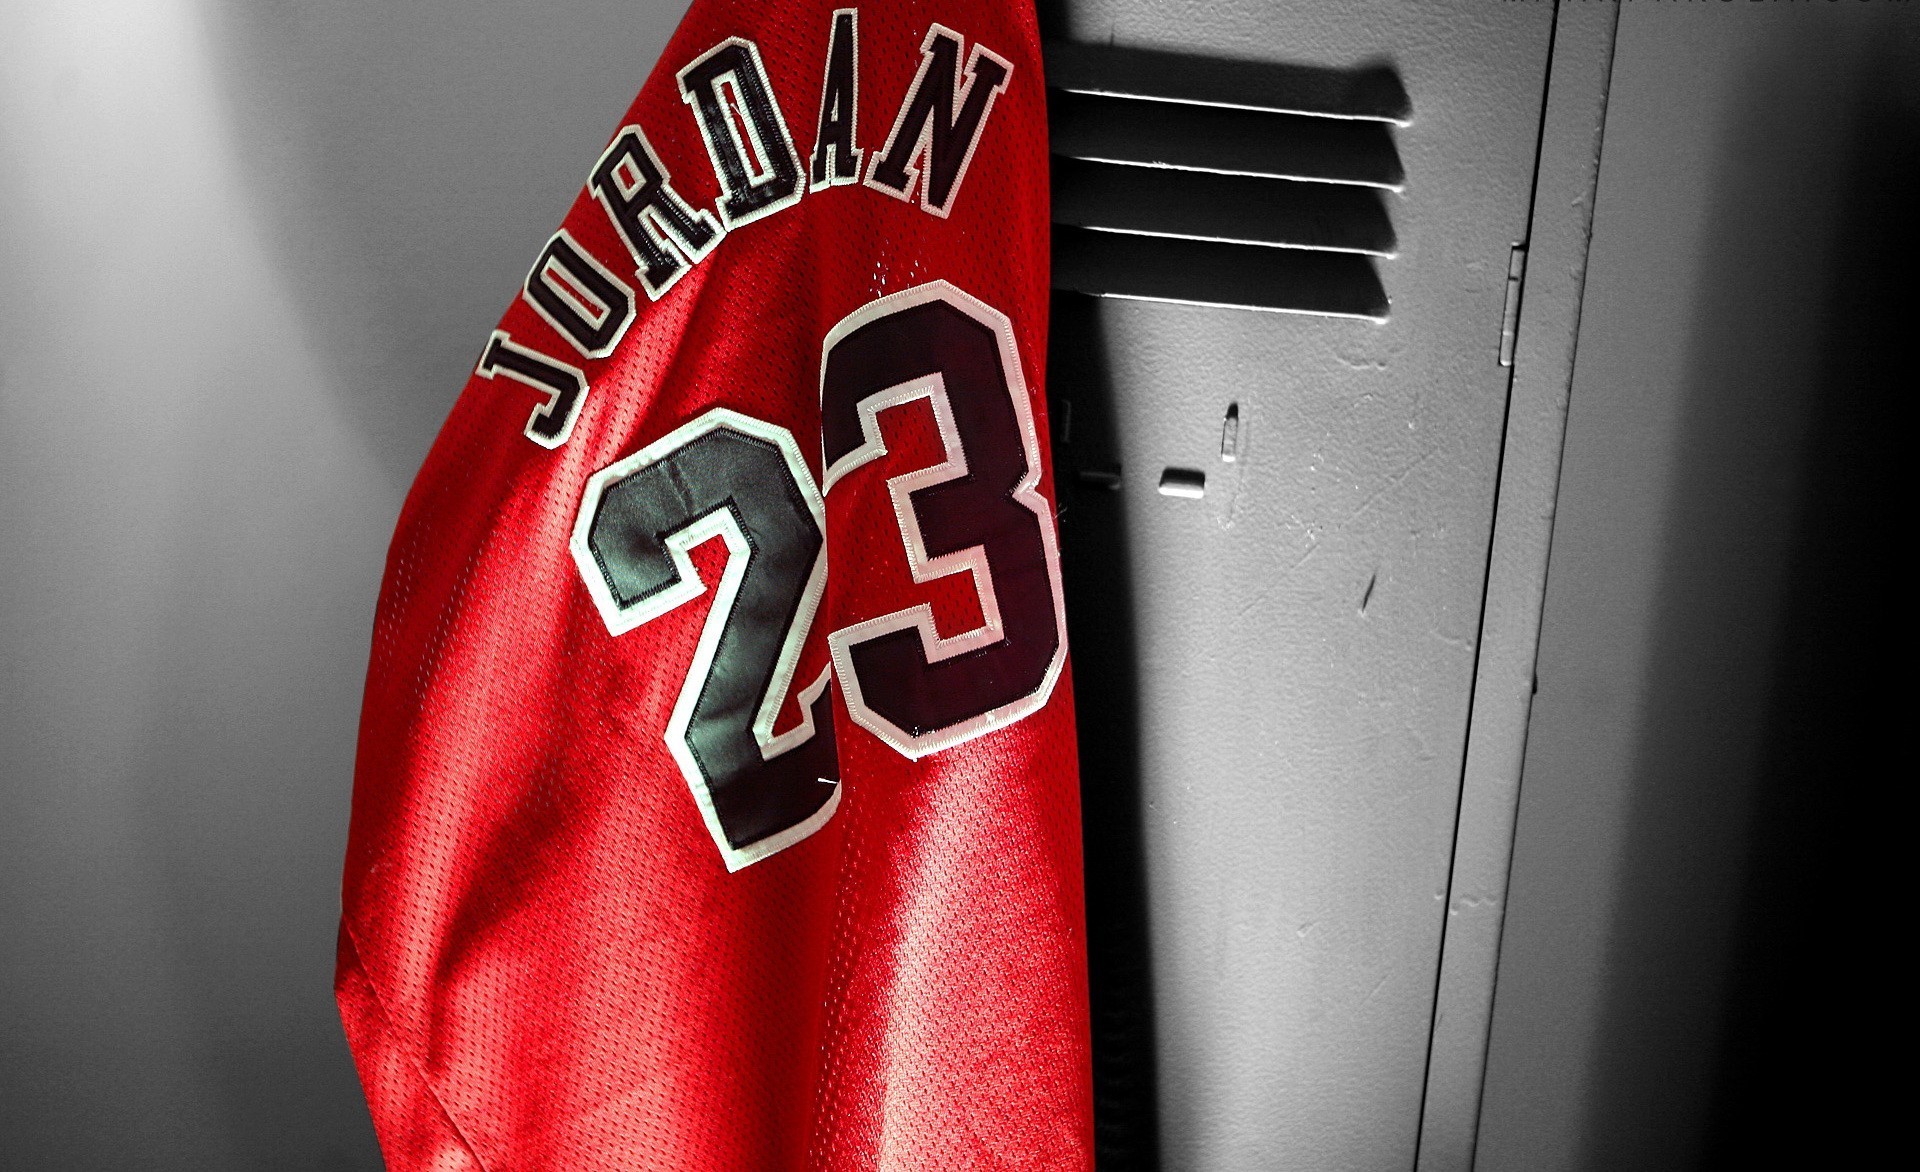 [49+] Michael Jordan Screensavers Wallpaper - WallpaperSafari